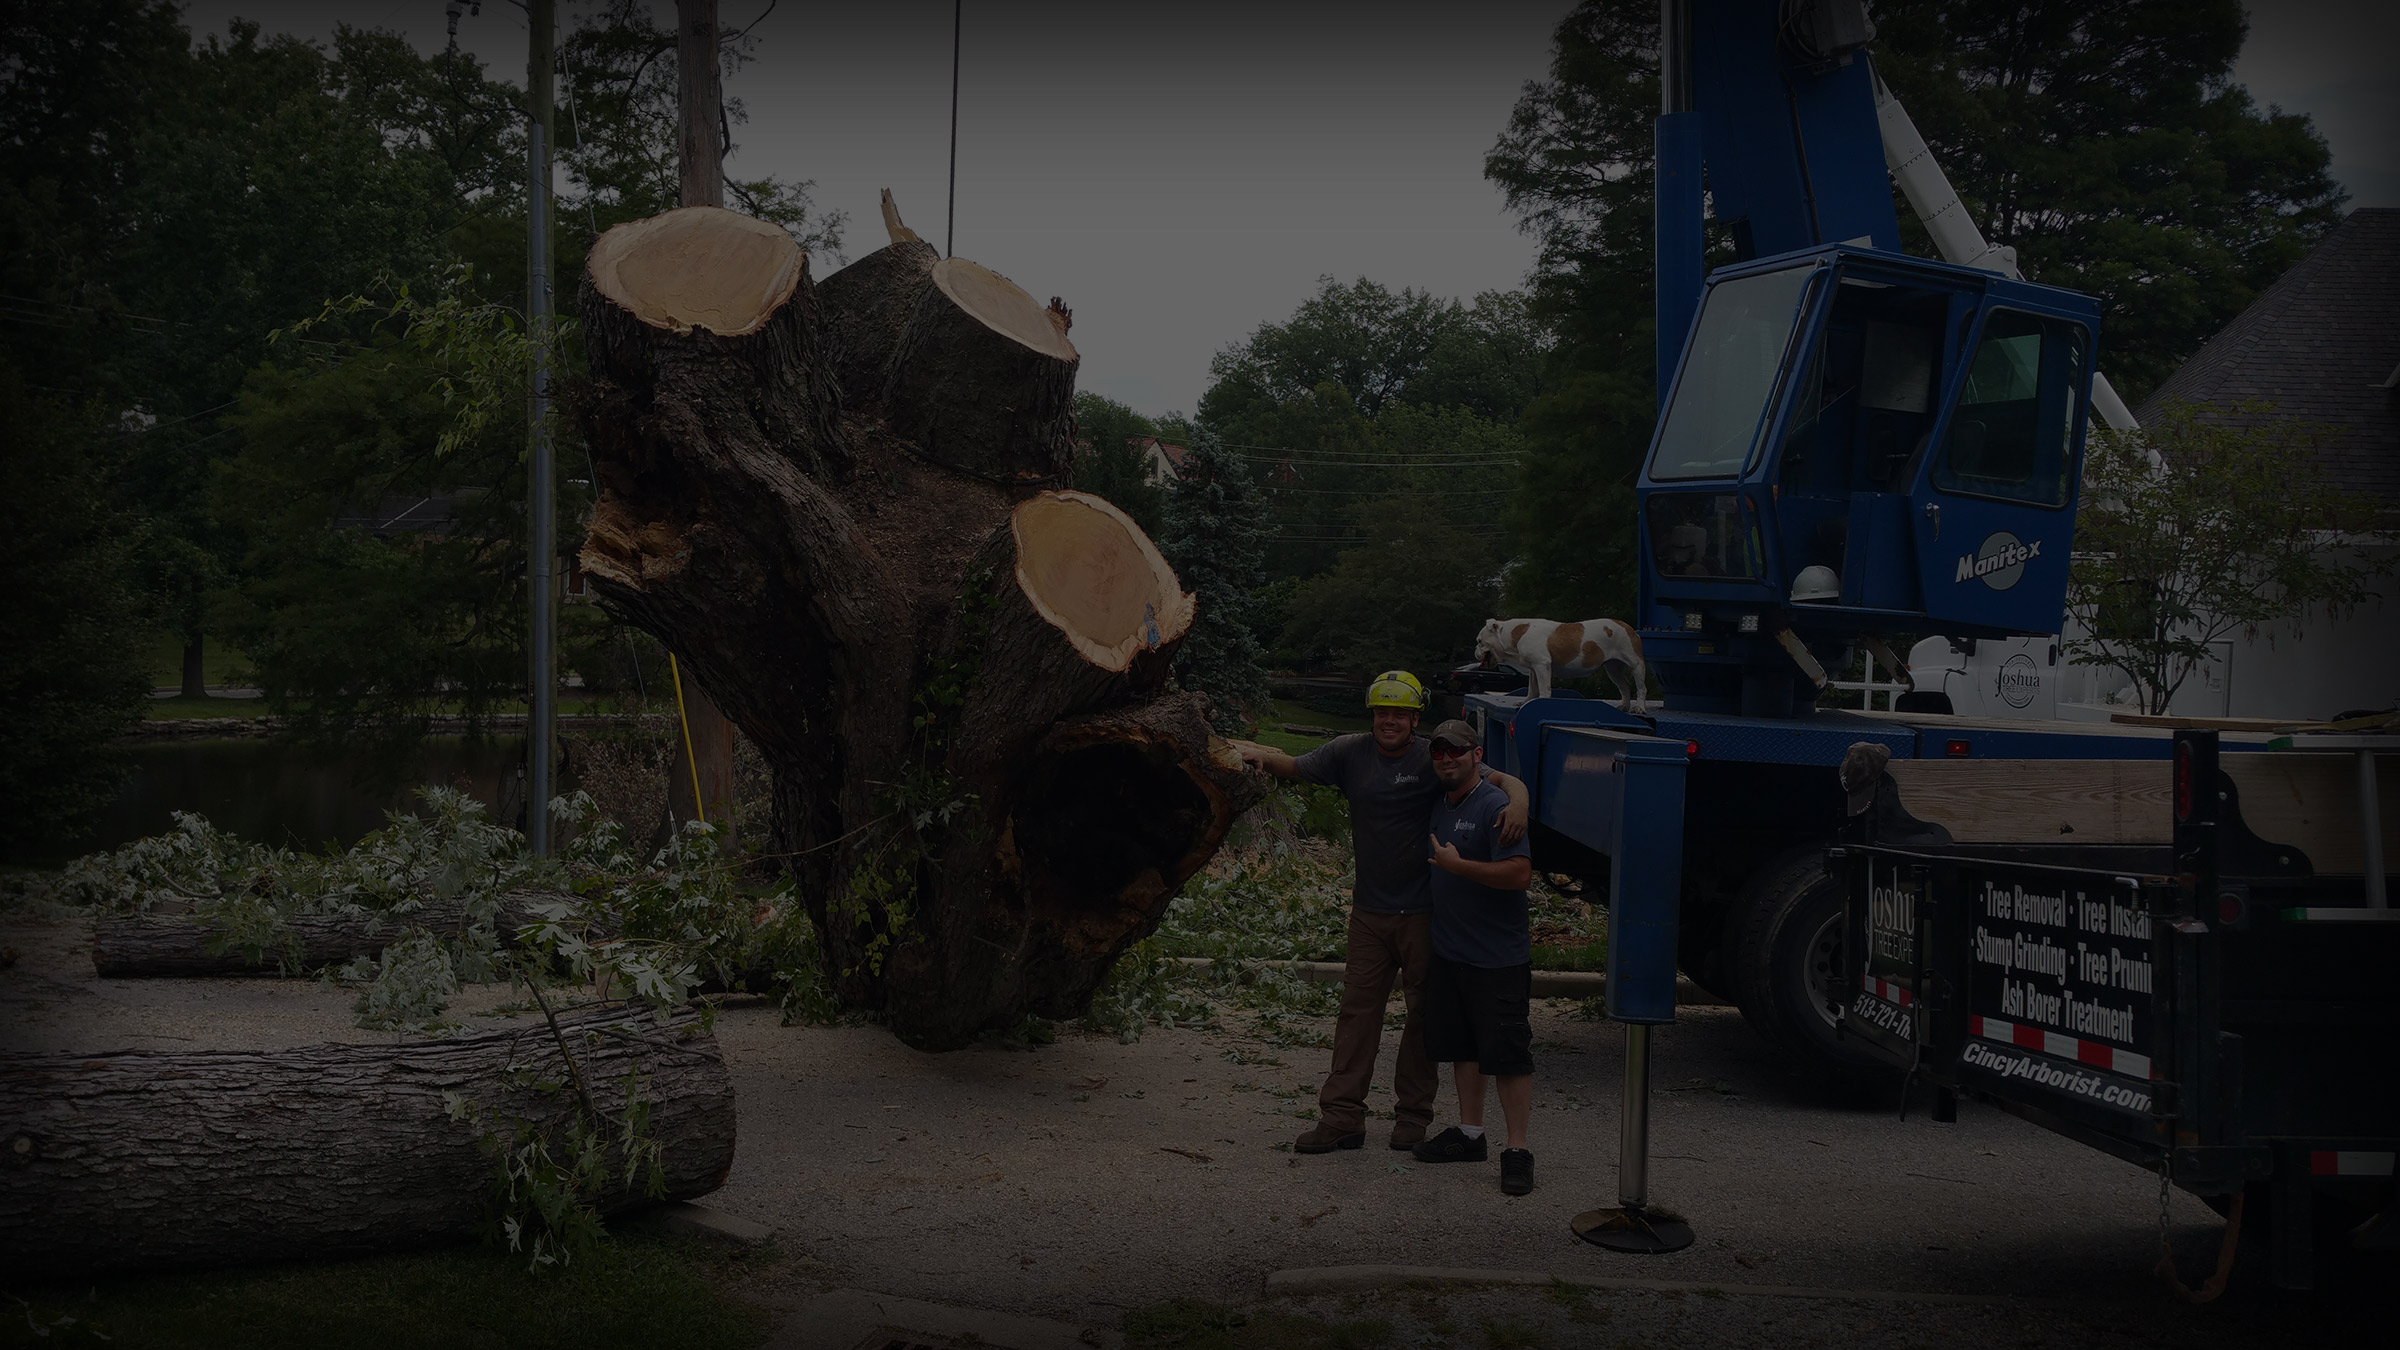 tree VA Covington chaska removal,